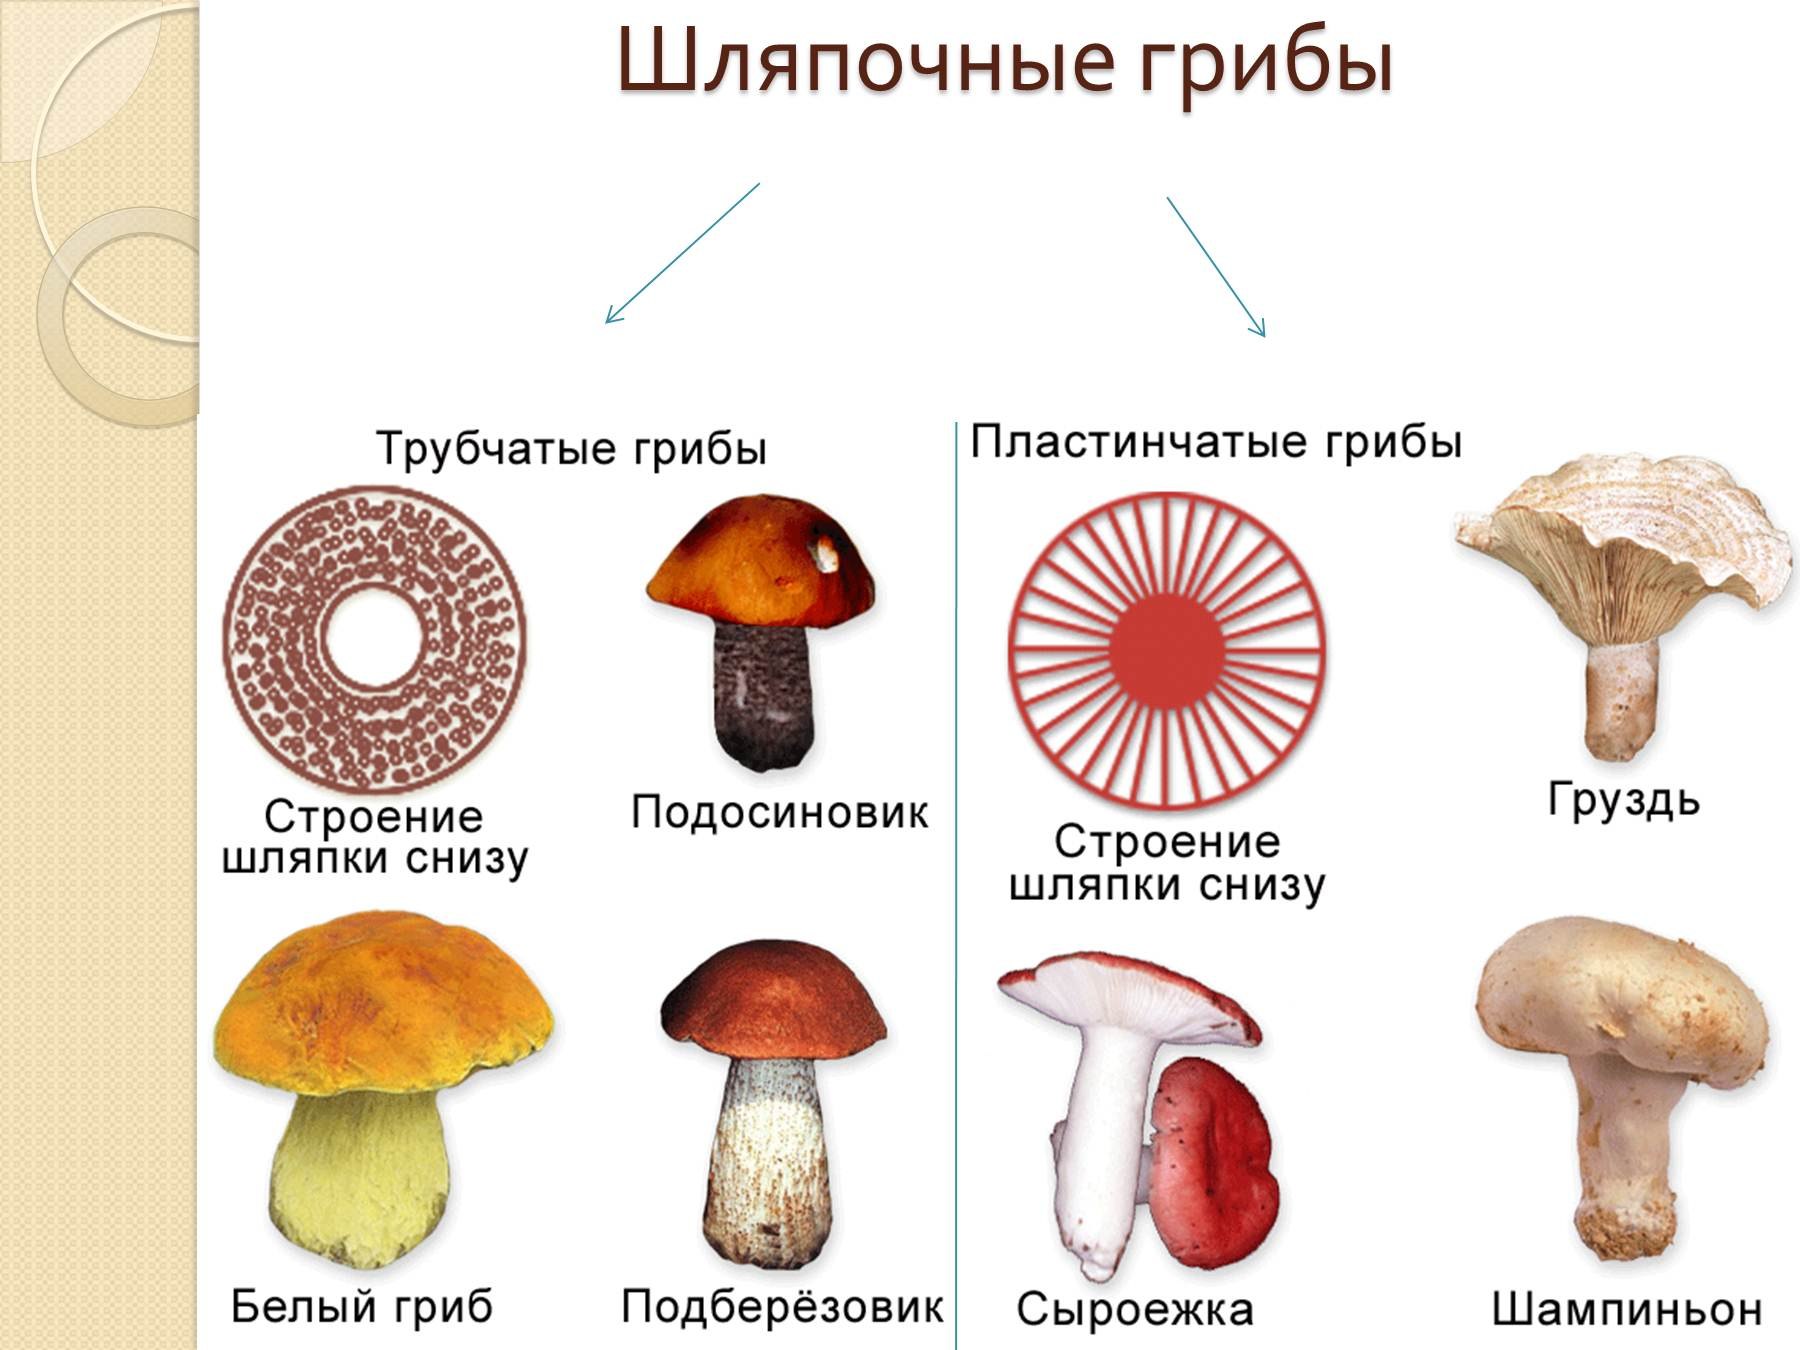 Представители шляпочных грибов 5 класс